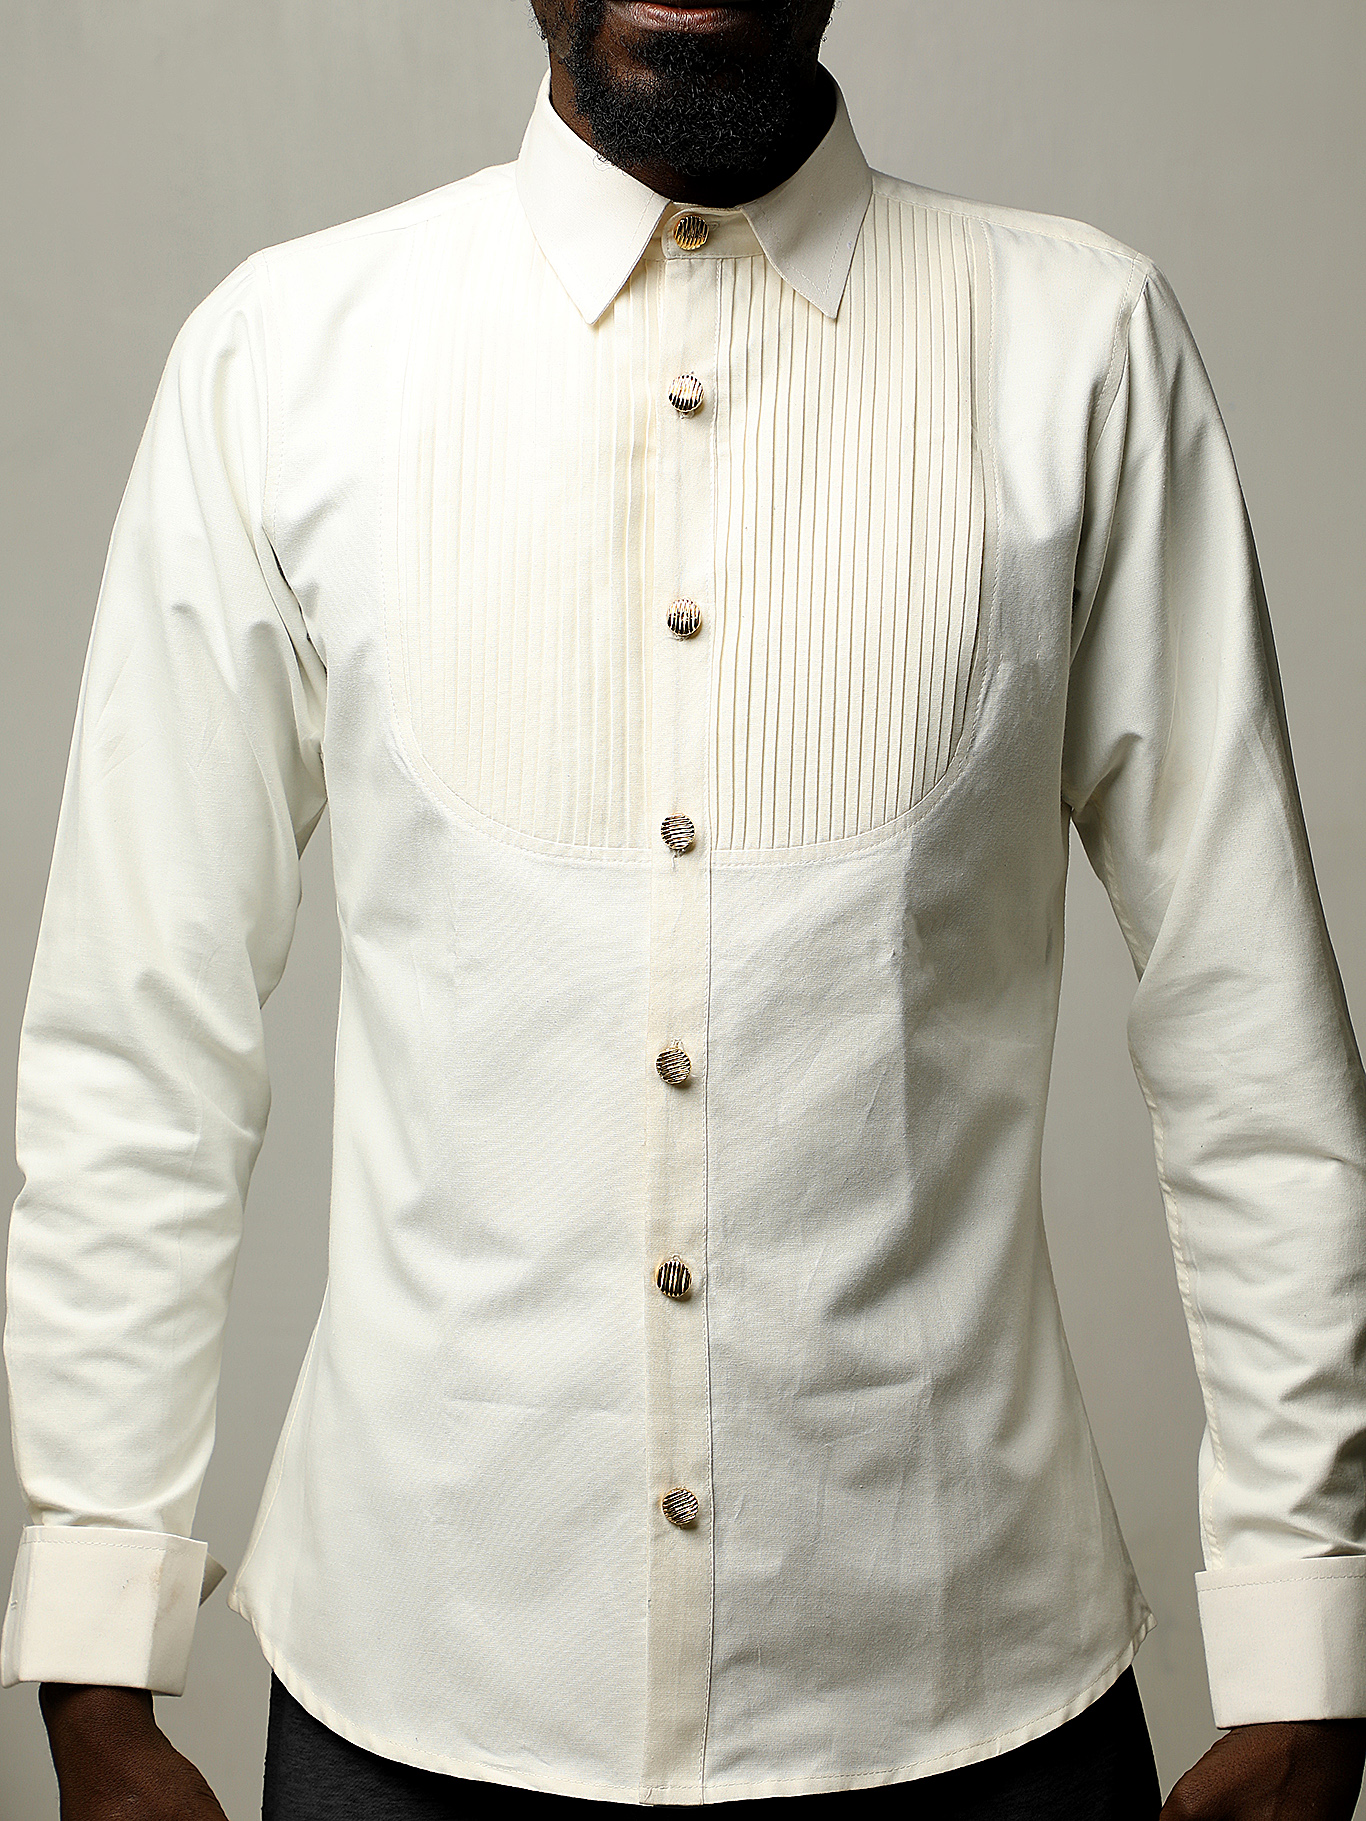 off-white designer tuxedo shirt in Nairobi Kenya